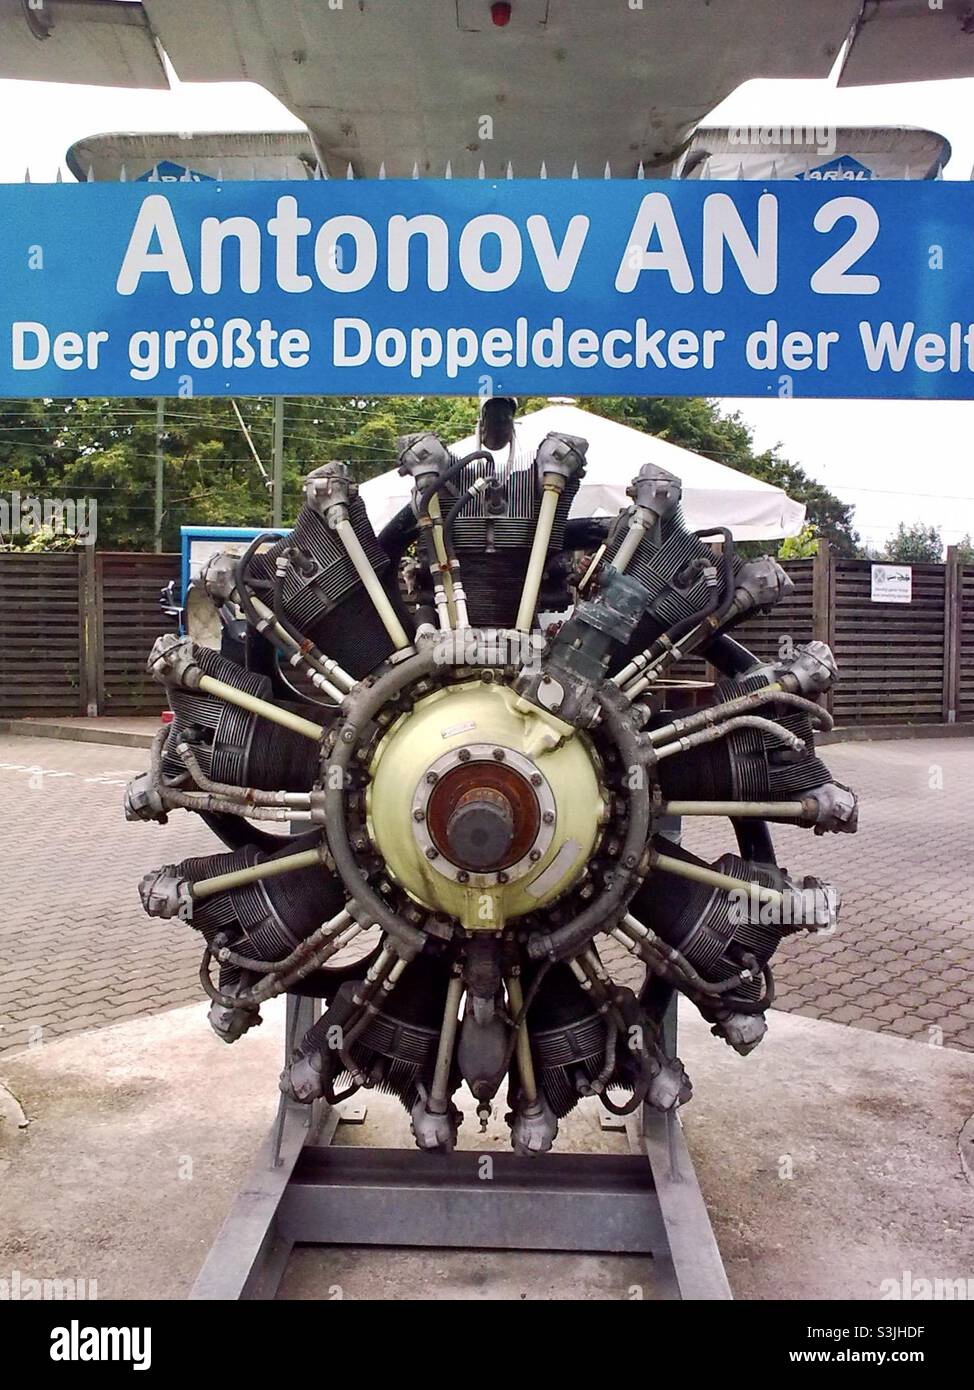 Kolbenmotor des einmotorigen Doppelflugzeuges Antonov an-2 aus der  sowjetzeit in Deutschland, Europa Stockfotografie - Alamy